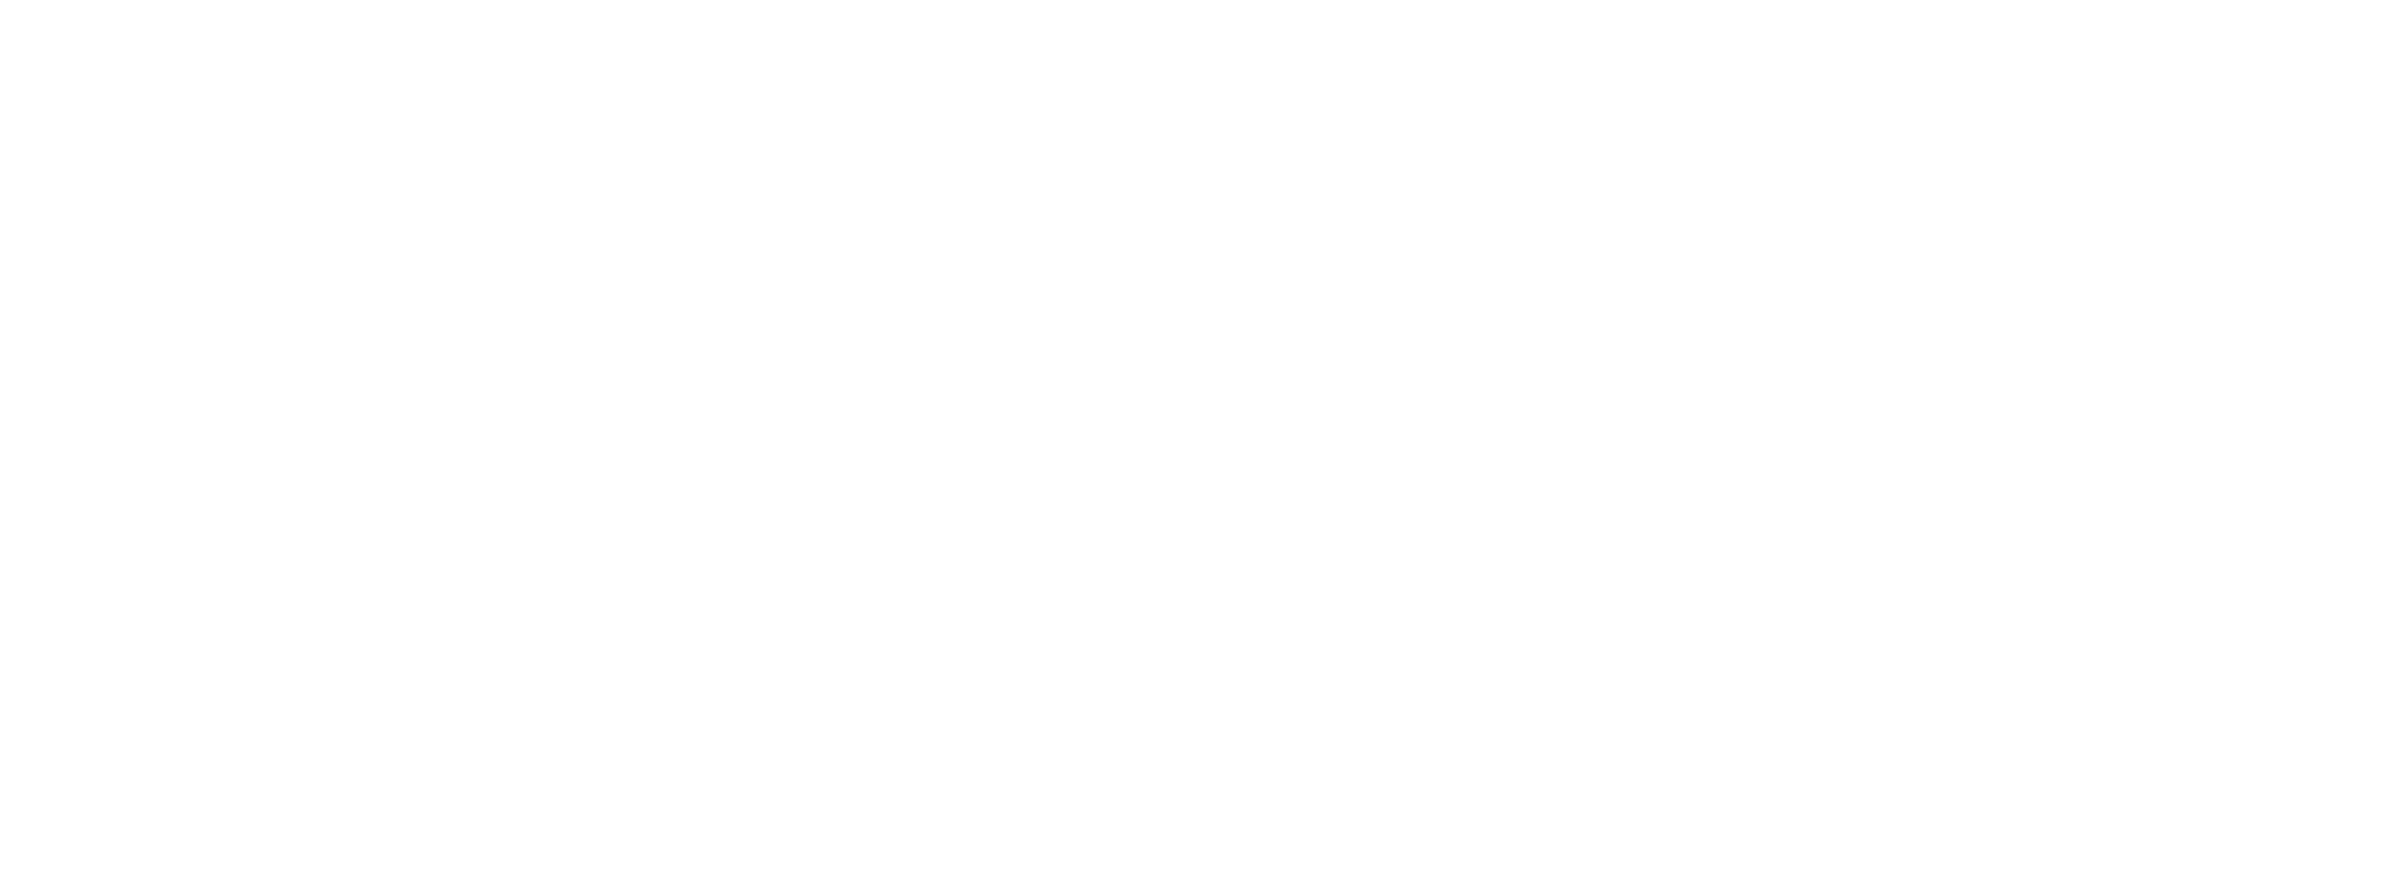 Logo Life SKills